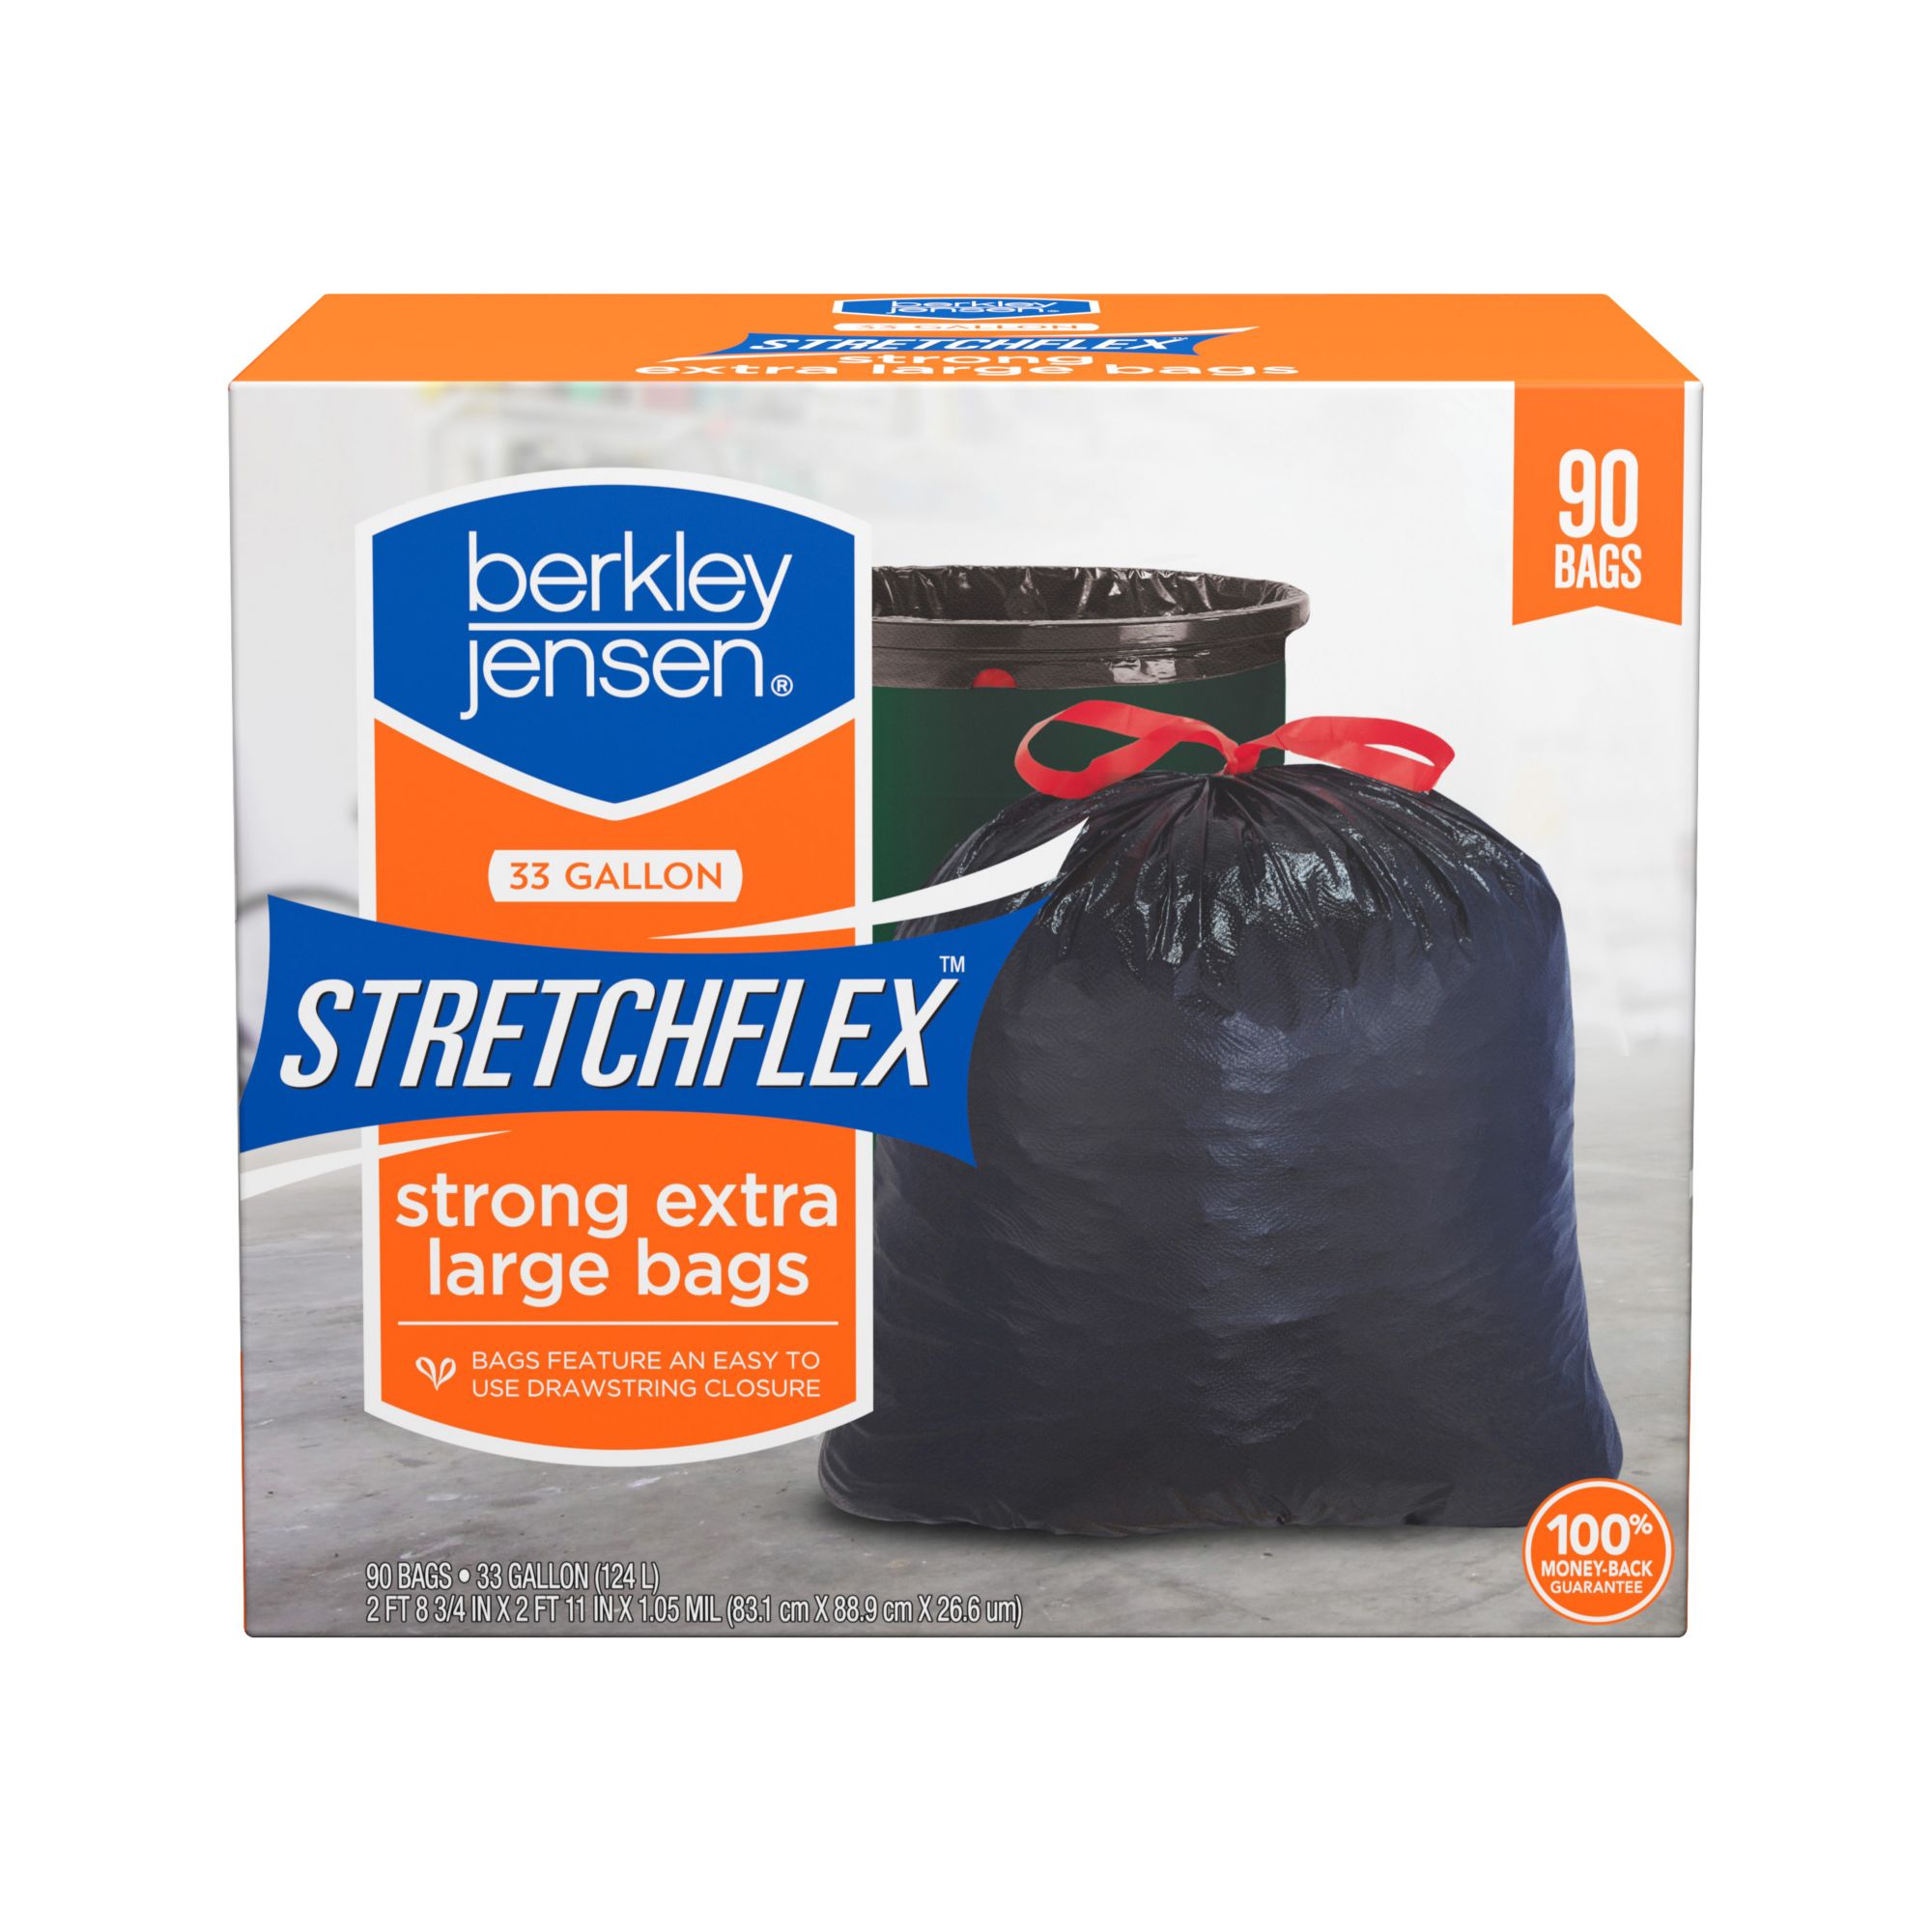 Berkley Jensen Stretchflex Drawstring Kitchen Bags, 90 ct./33 gal